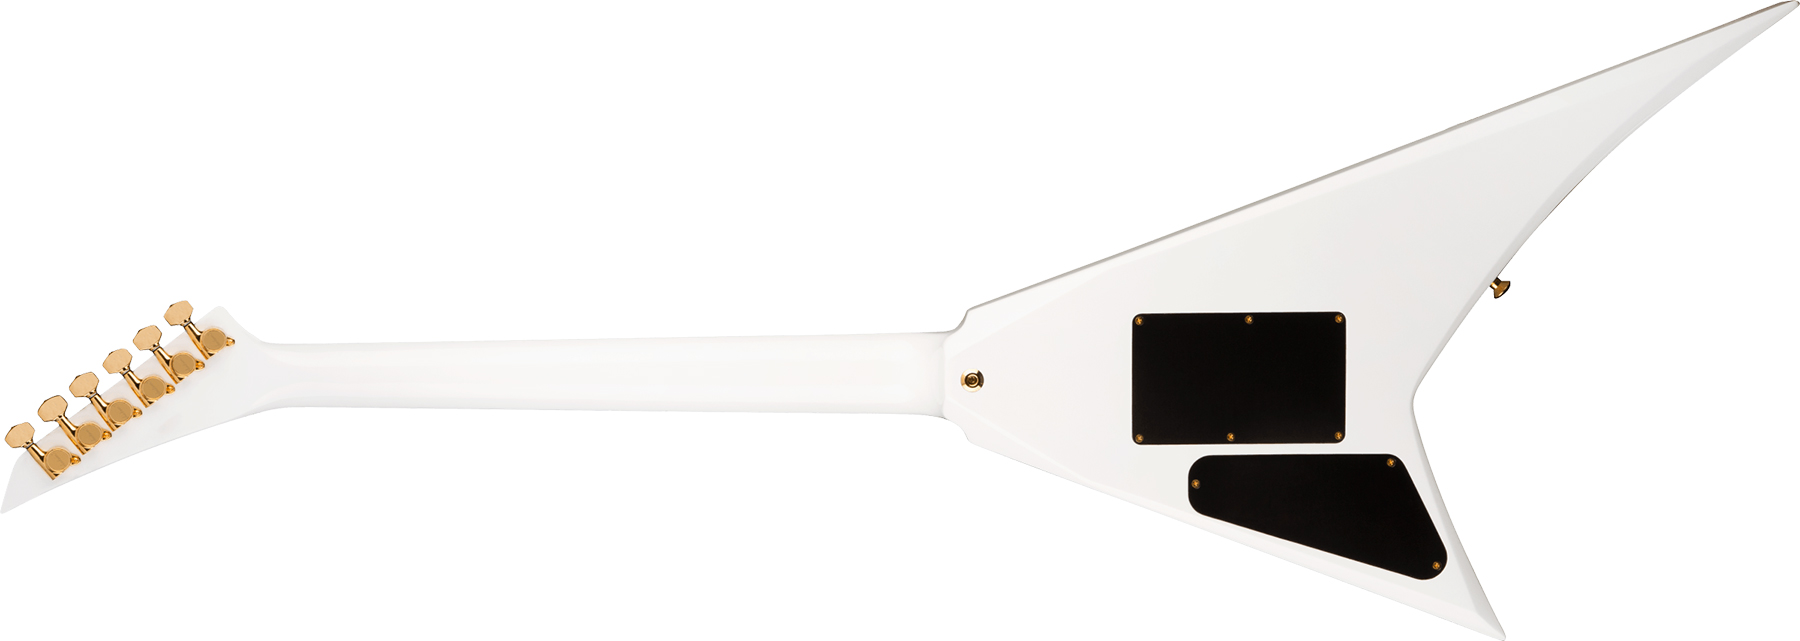 Jackson Rhoads Rr24 Hs Concept Hst Seymour Duncan Fr Eb - White With Black Pinstripes - Metalen elektrische gitaar - Variation 1